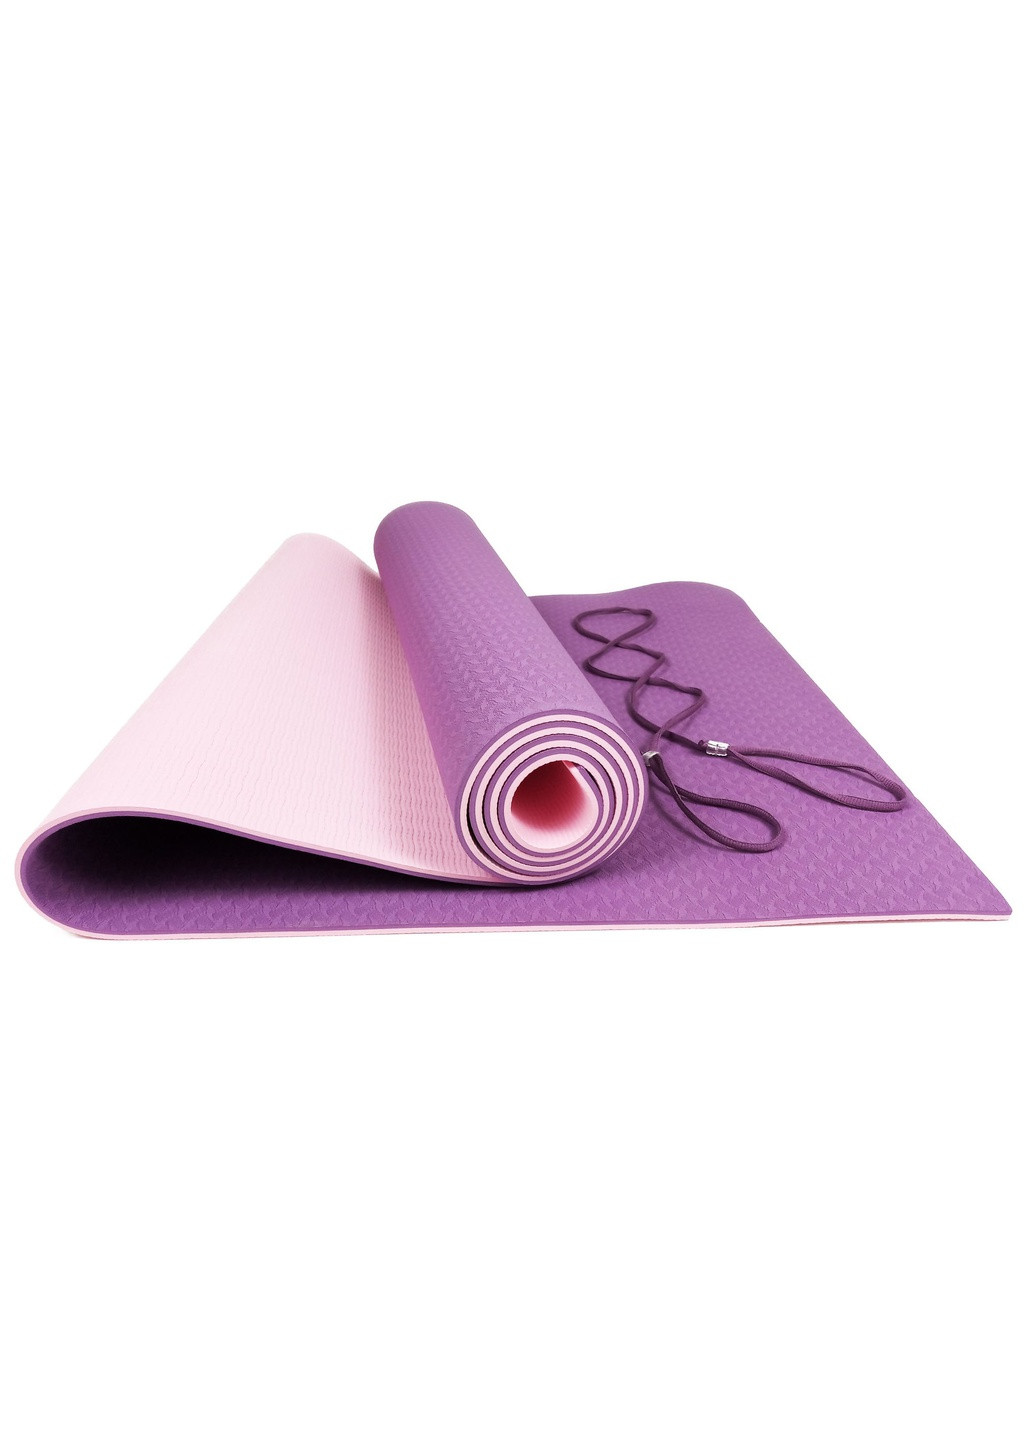 Набір для йоги PRO (EF-YPVP) - килимок для йоги (каремат, йогамат для фітнесу), два блоки (цеглини) і ремінь (лямка) EasyFit (241229831)